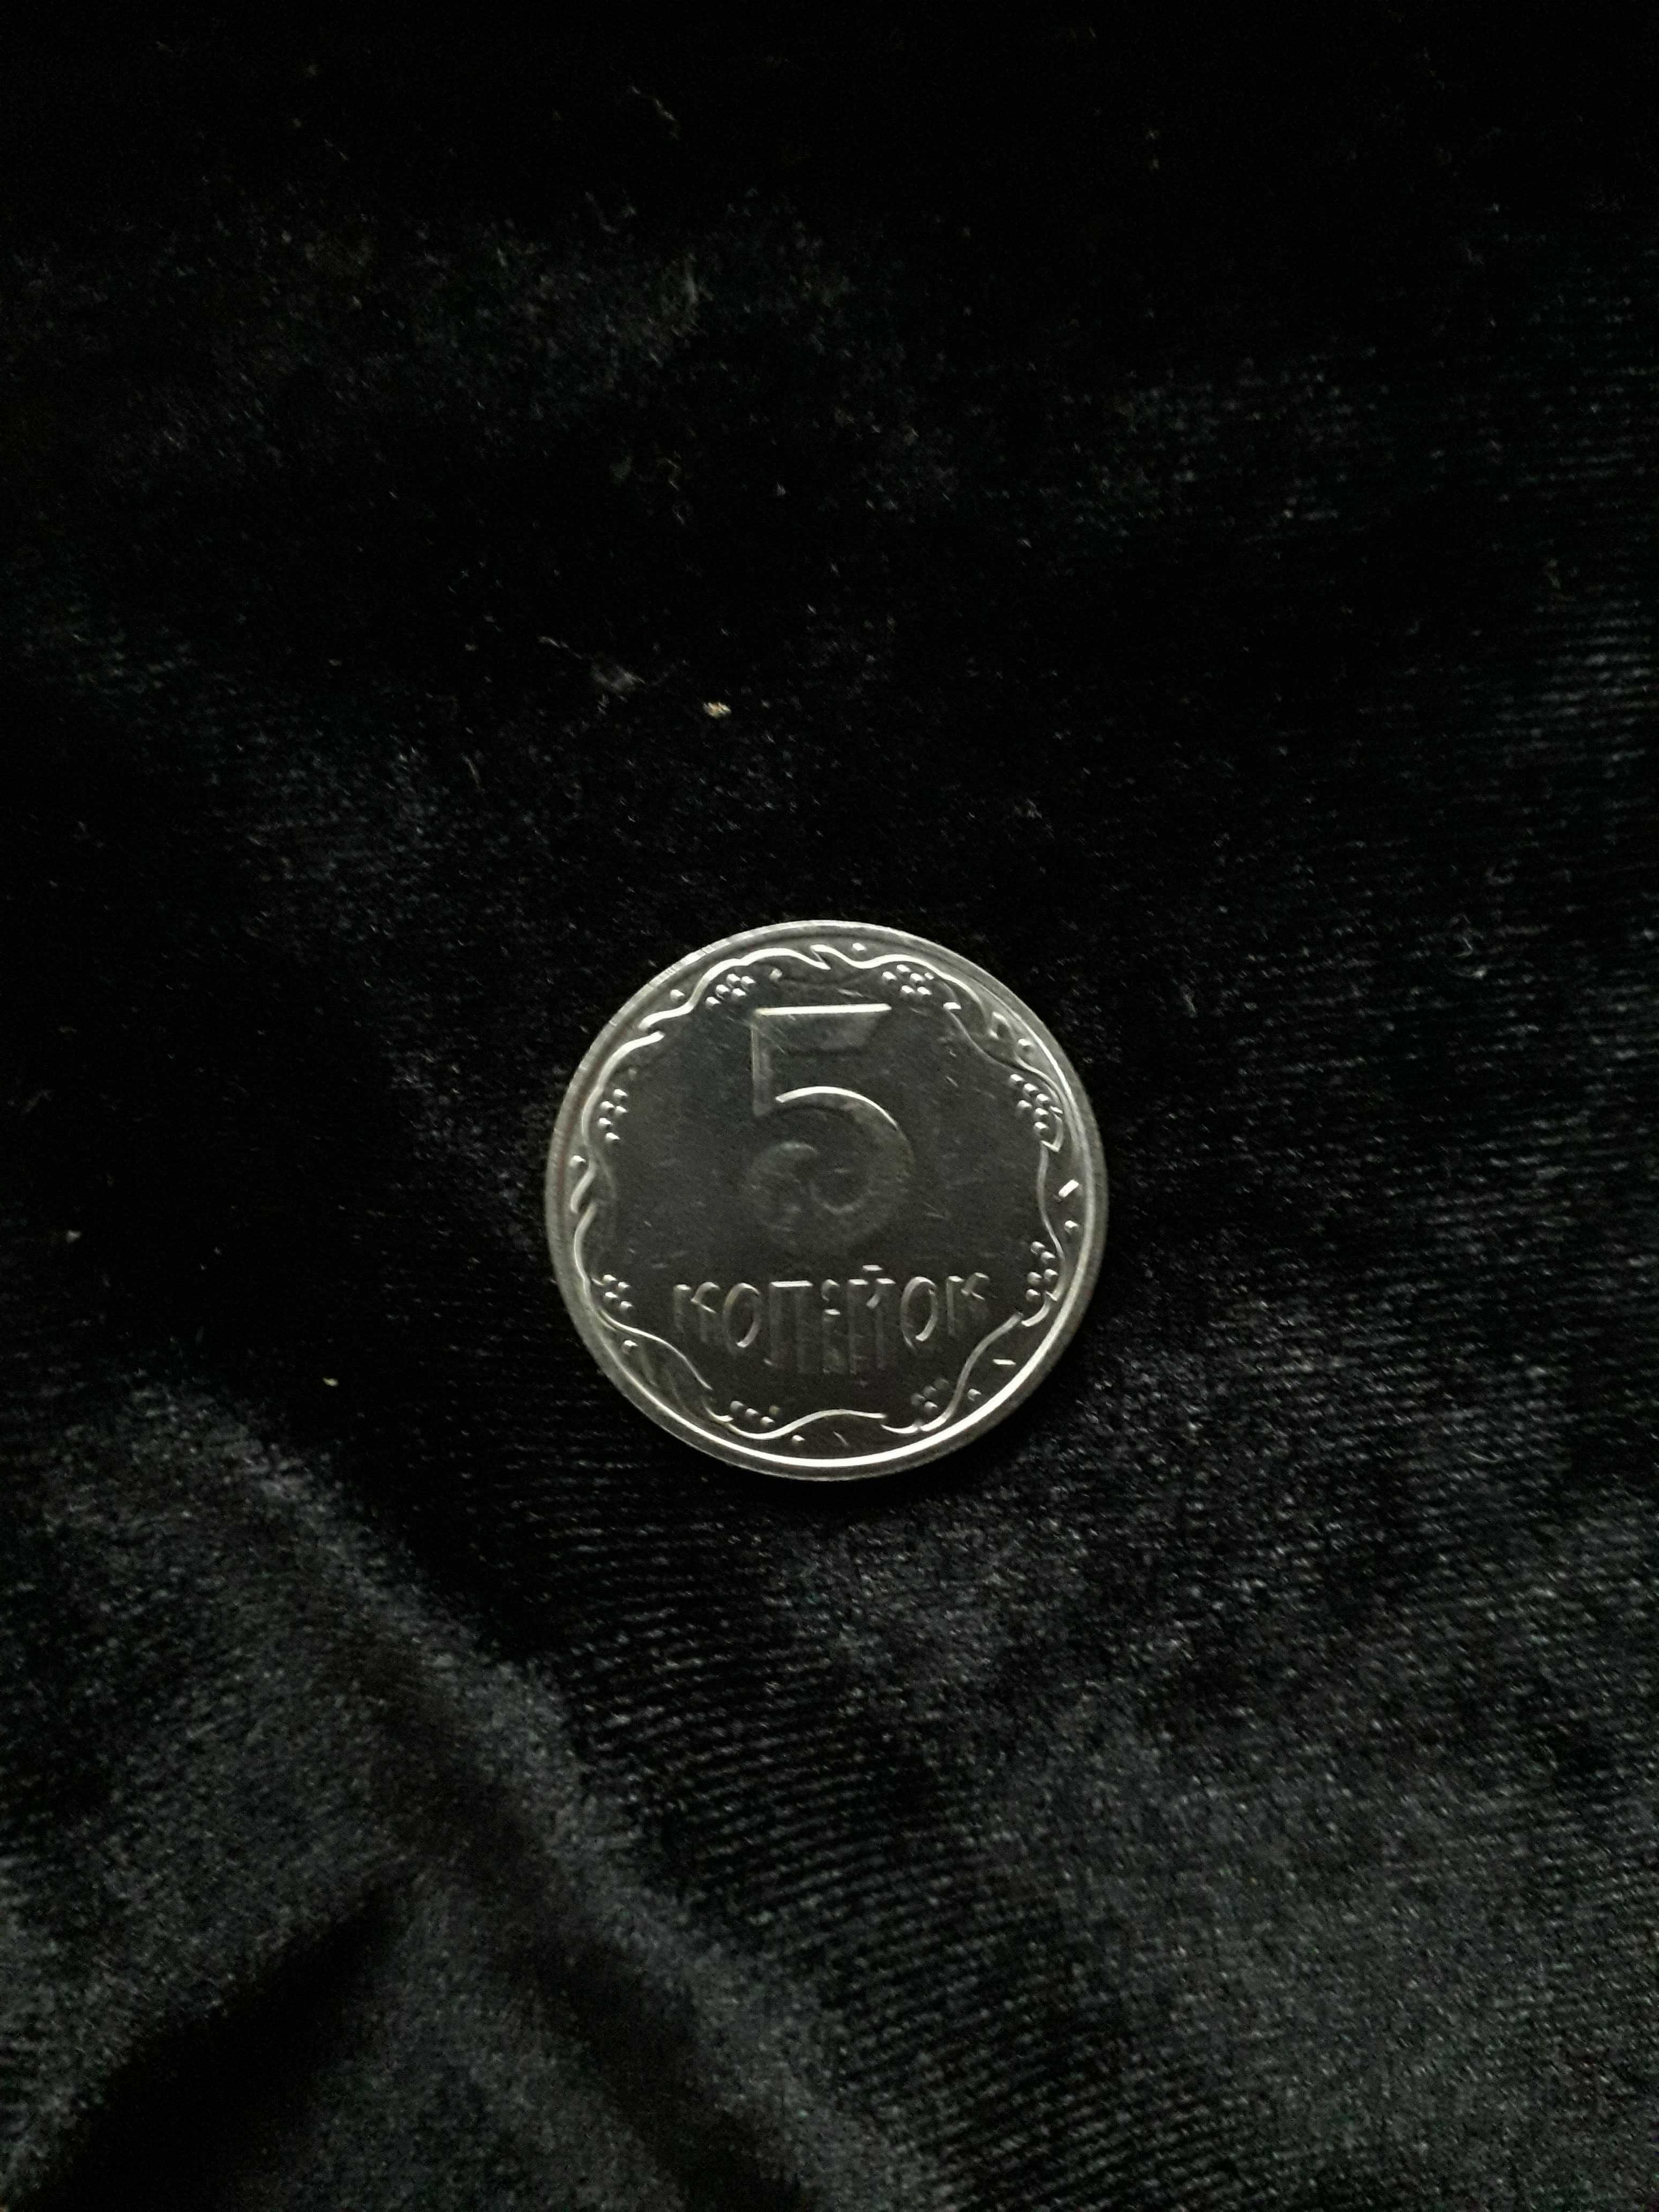 монеты Украины 1 коп.1992 г- 1.11АЕ,2 коп. 1993 г, 5 коп. 2004 г- 2ВБм